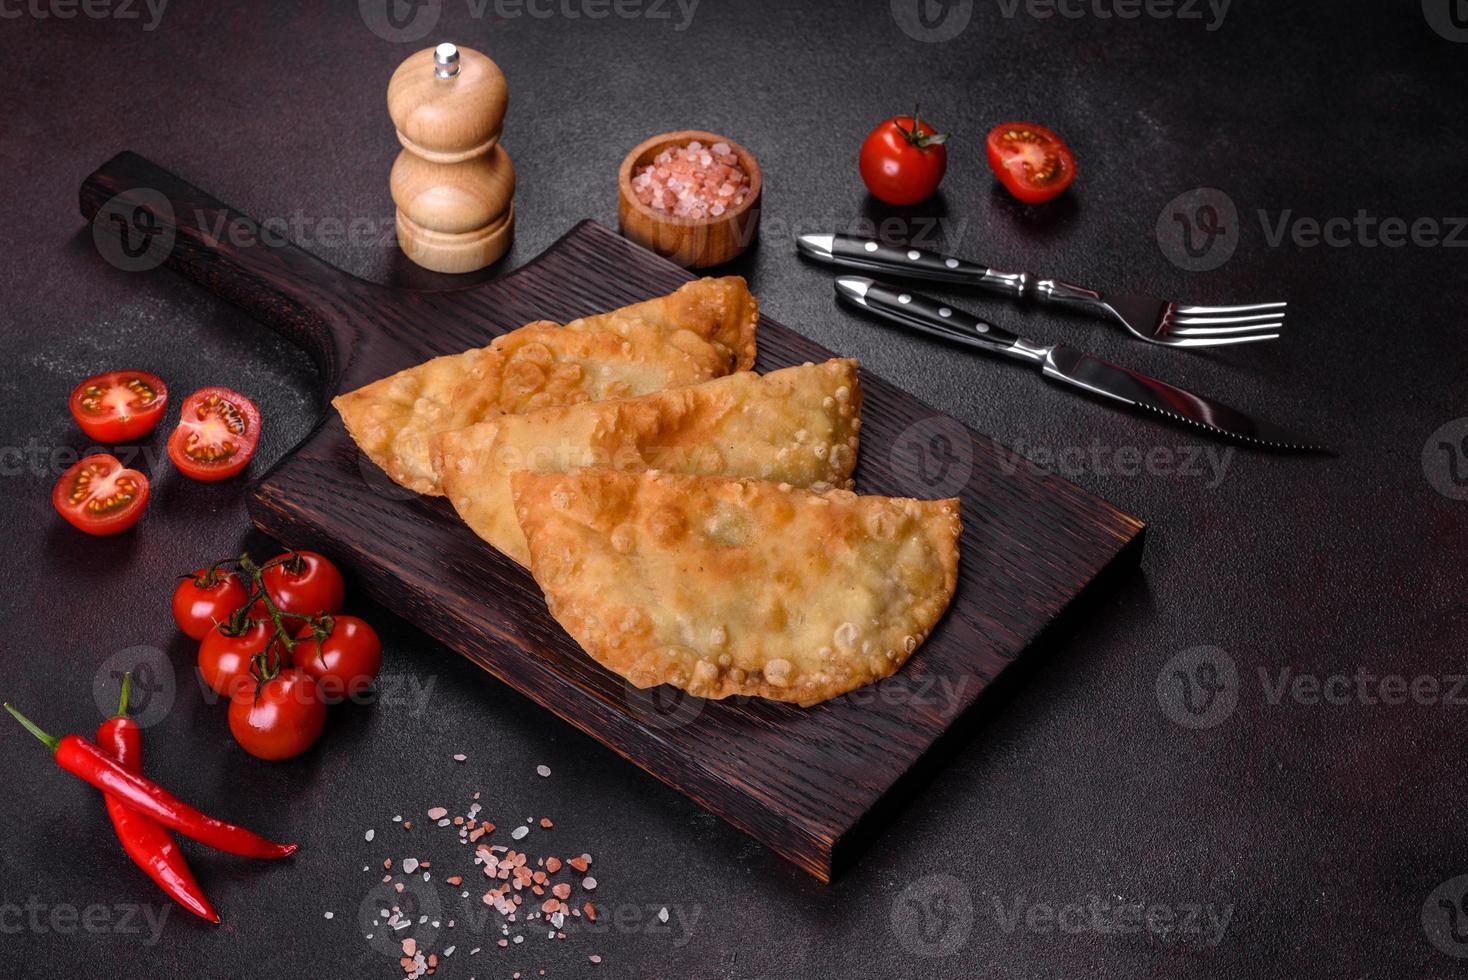 chebureks faits maison remplis de viande hachée et d'oignons, cuisine caucasienne traditionnelle photo